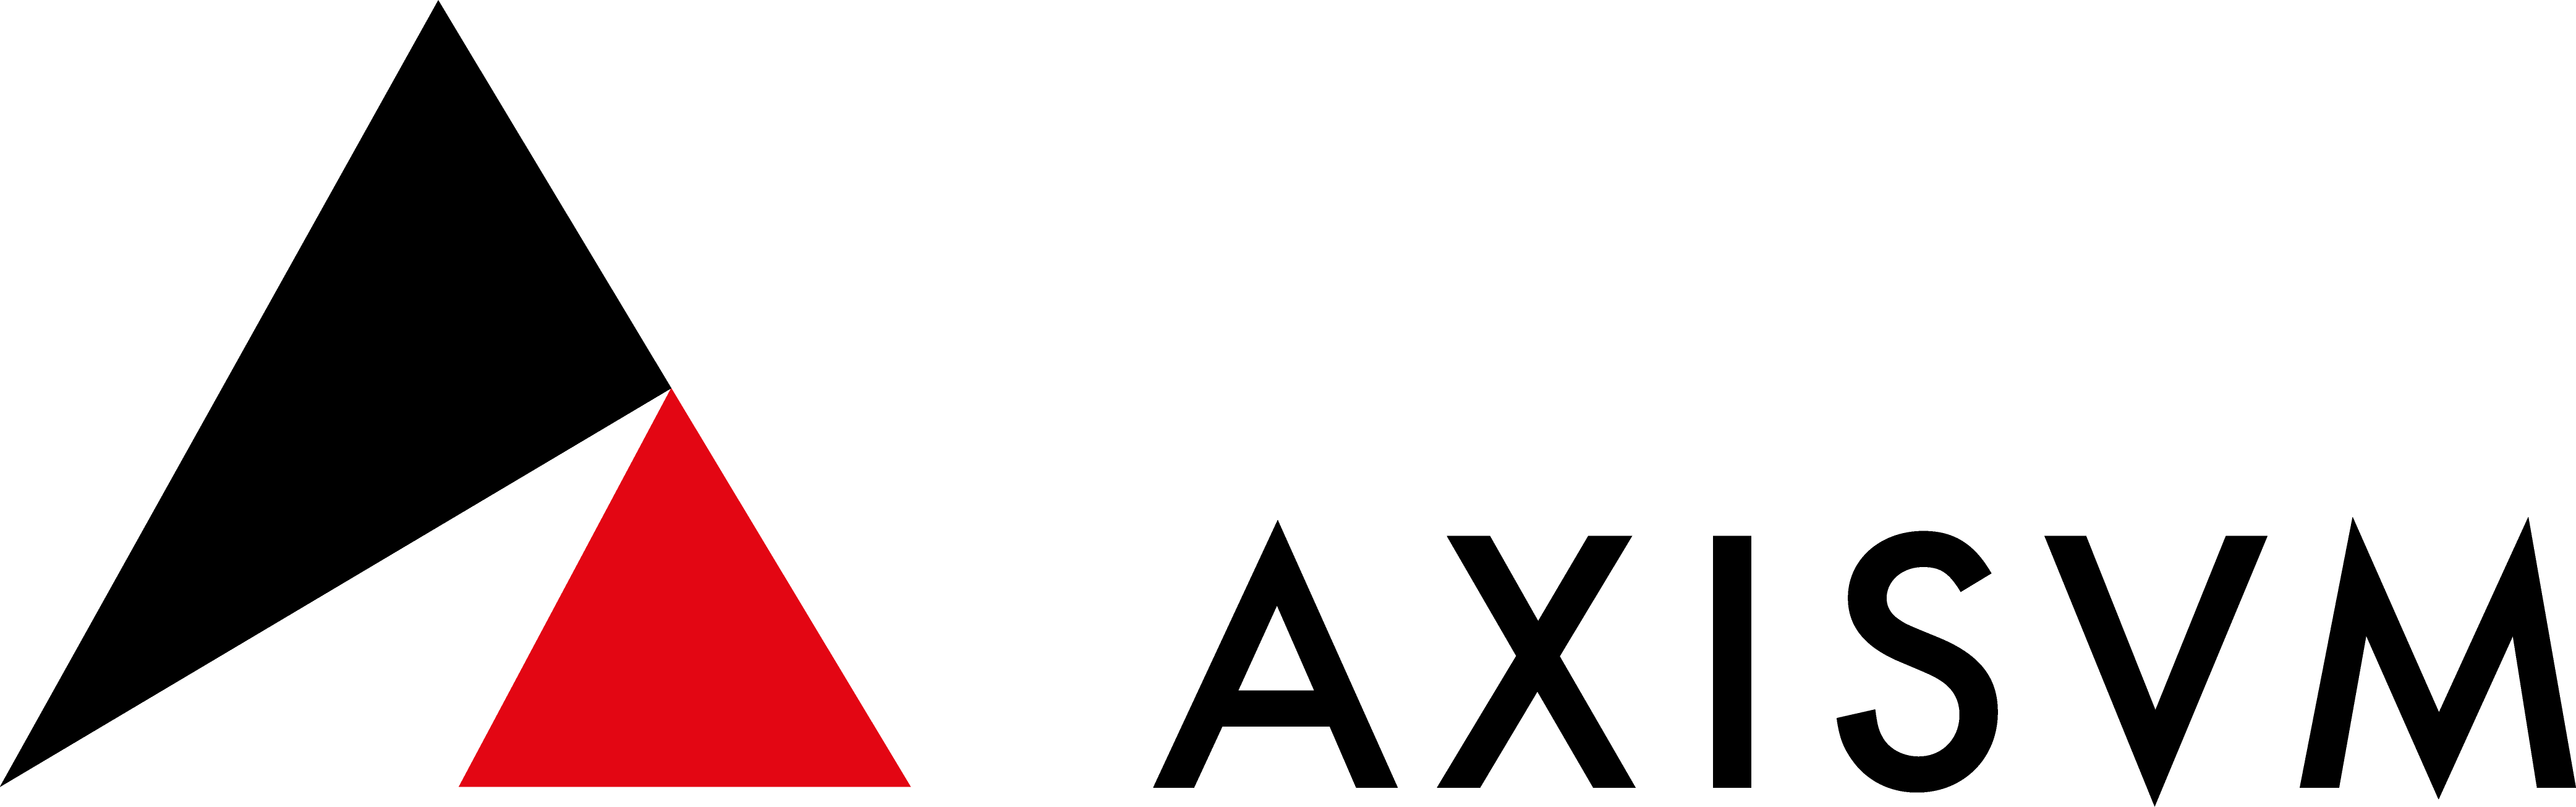 AXISVM Logo